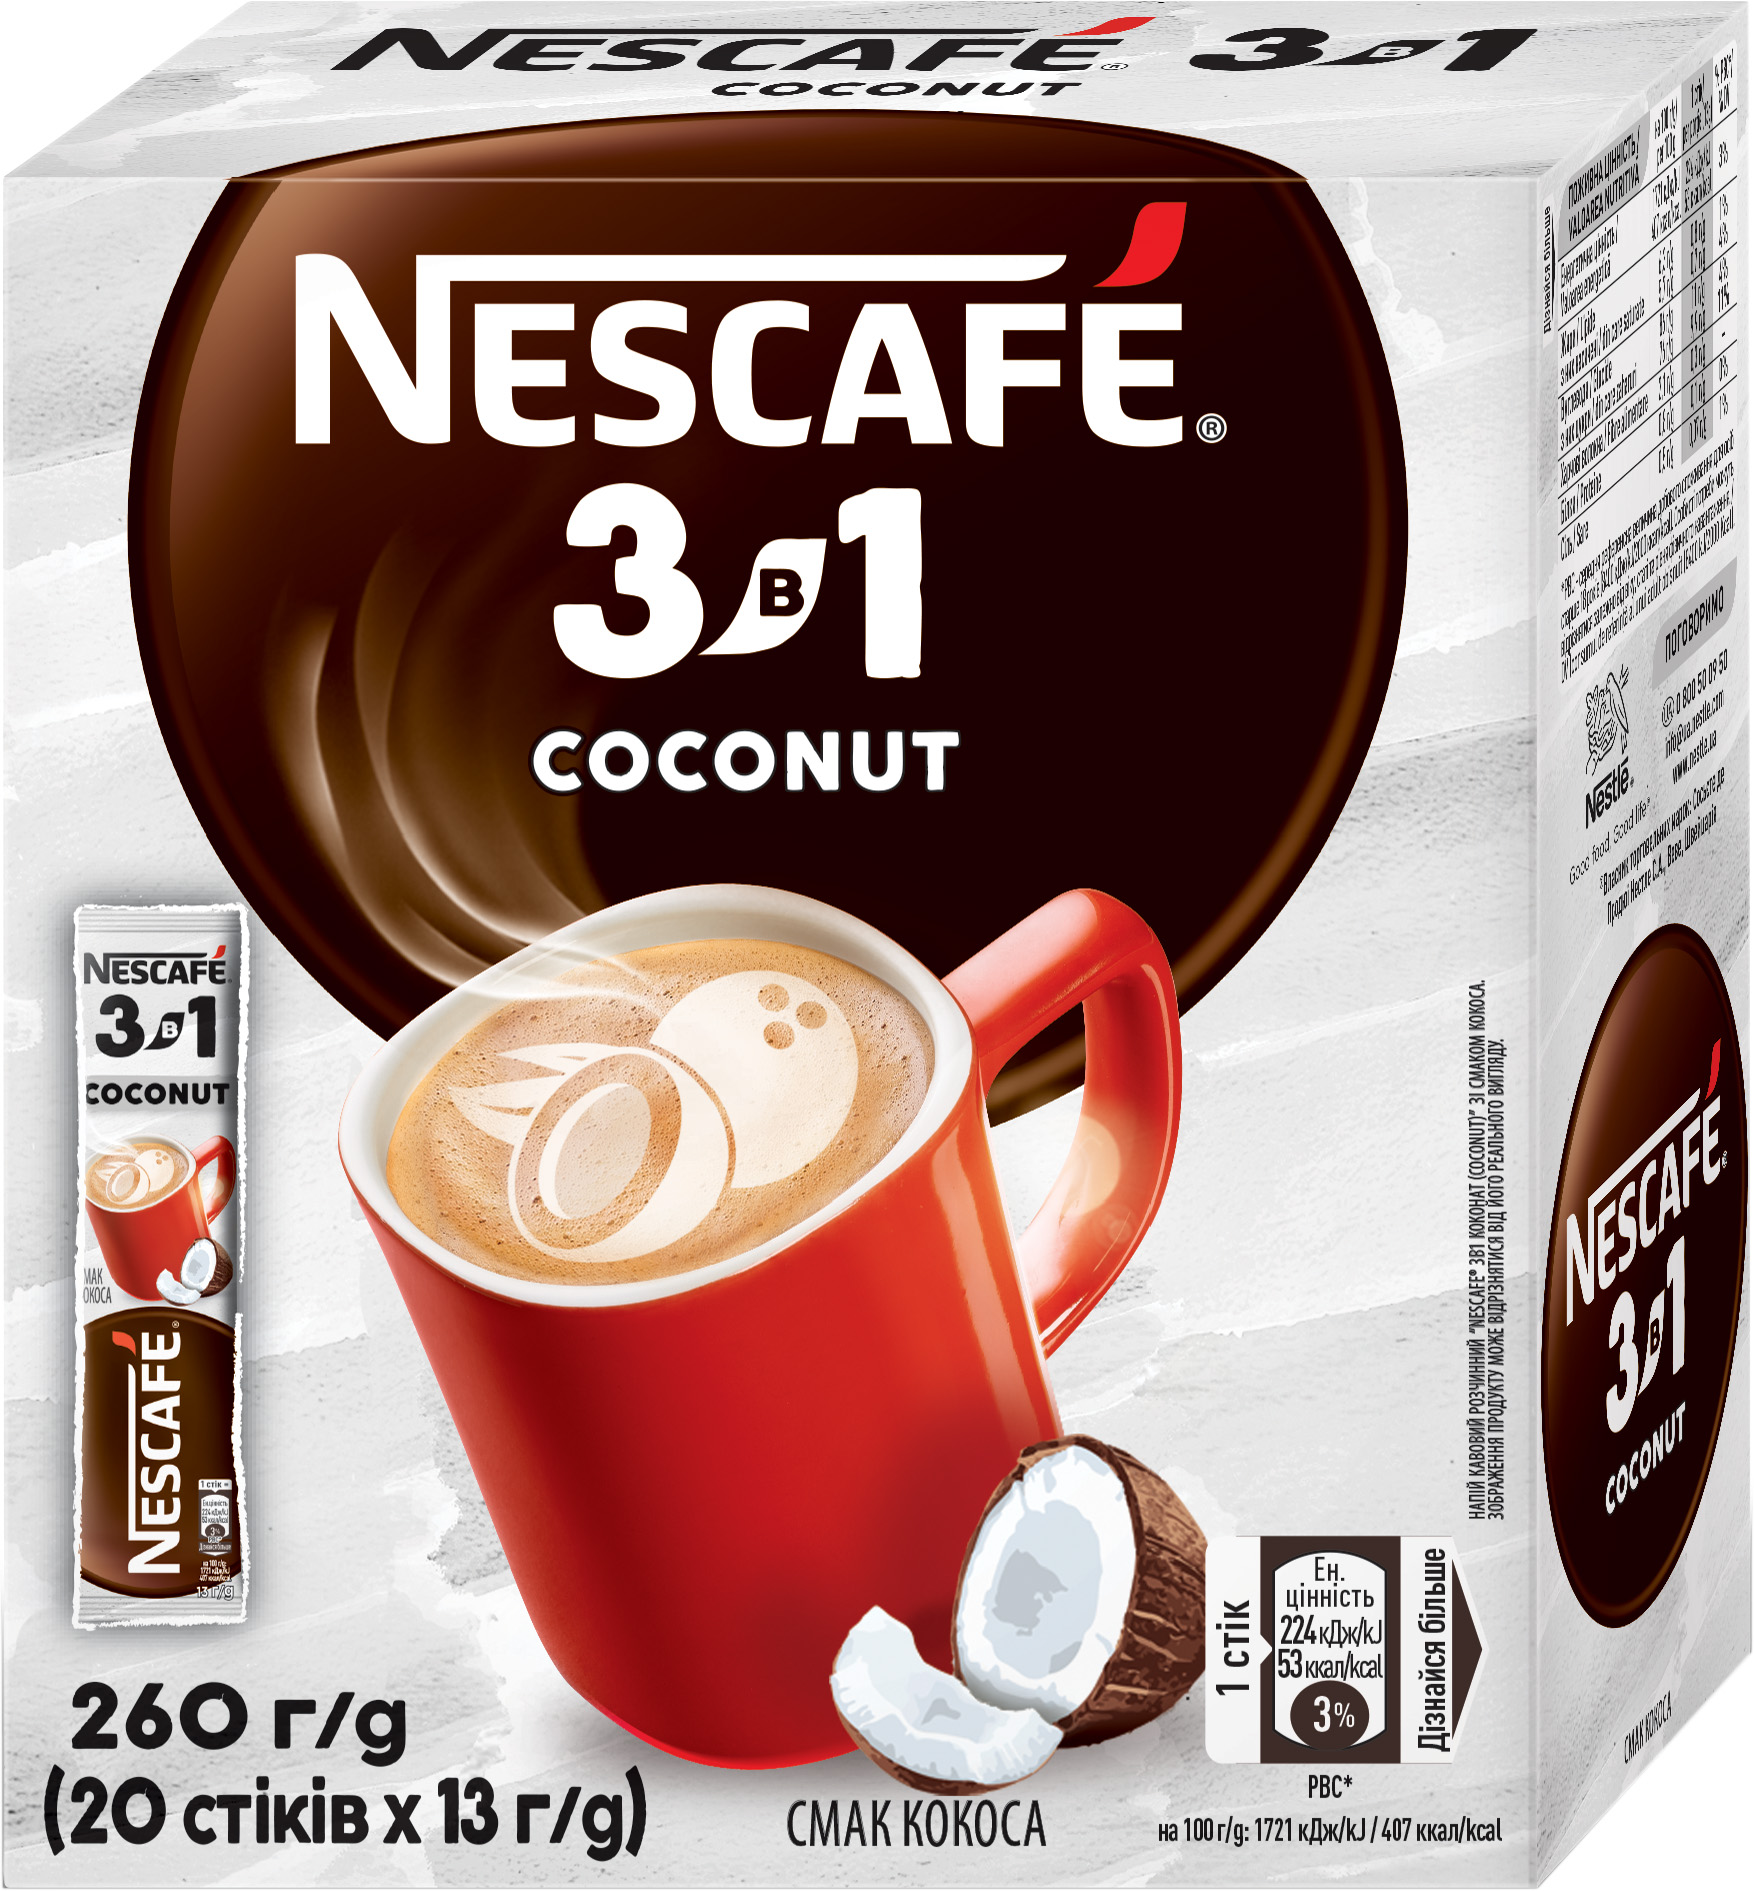  Набір Кава розчинна Nescafe 3в1 Coconut 20 стіків x 10 шт